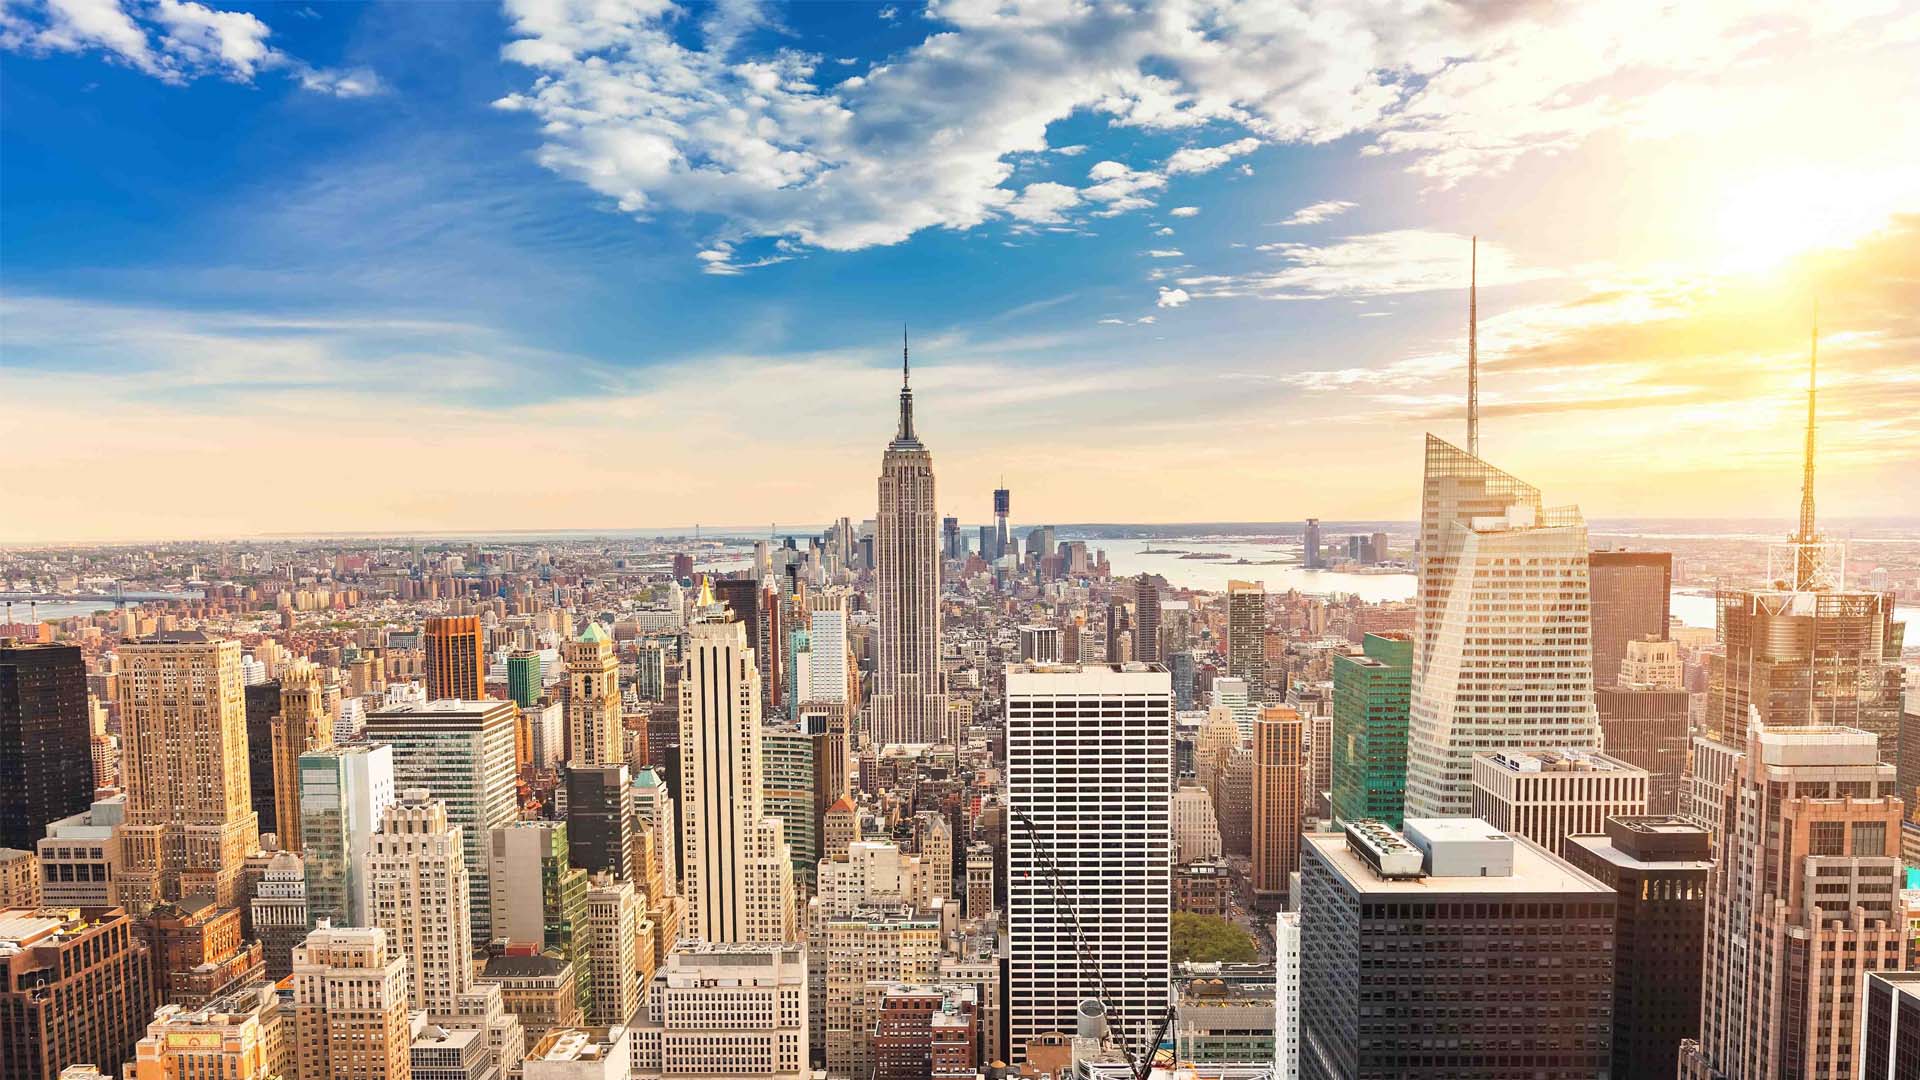 Una empresa de la nación árabe adquirió acciones en el Empire State Building